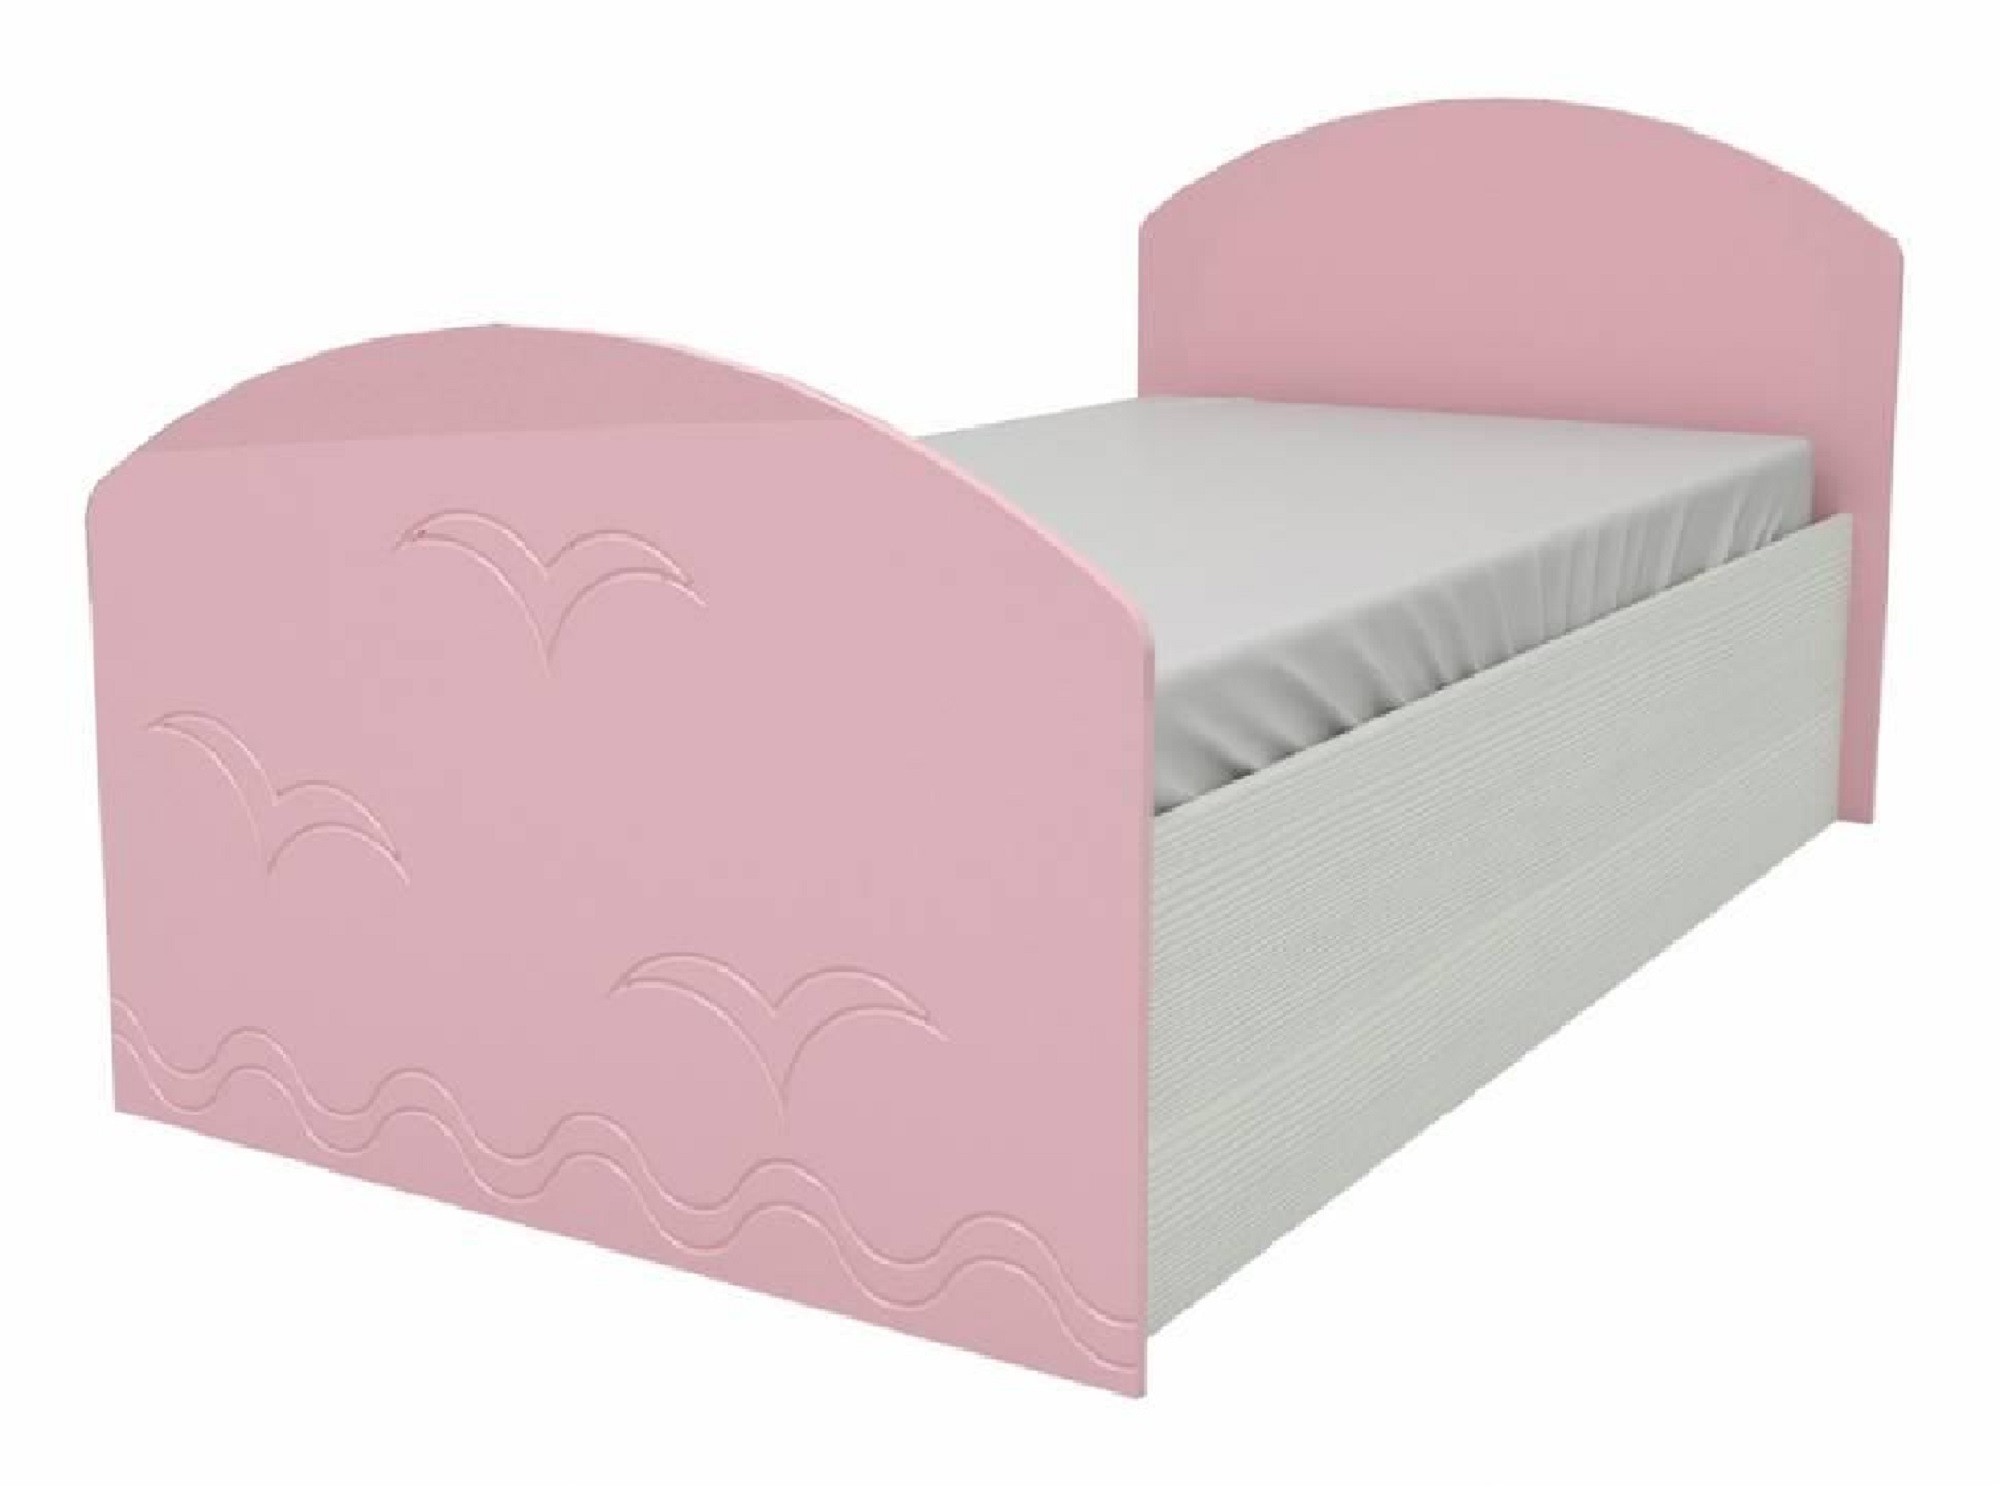 Юниор-2 Детская кровать 80, металлик (Розовый металлик, Дуб белёный) Розовый металлик, МДФ, ЛДСП юниор 2 детская кровать 80 металлик розовый металлик дуб белёный дуб белёный мдф лдсп